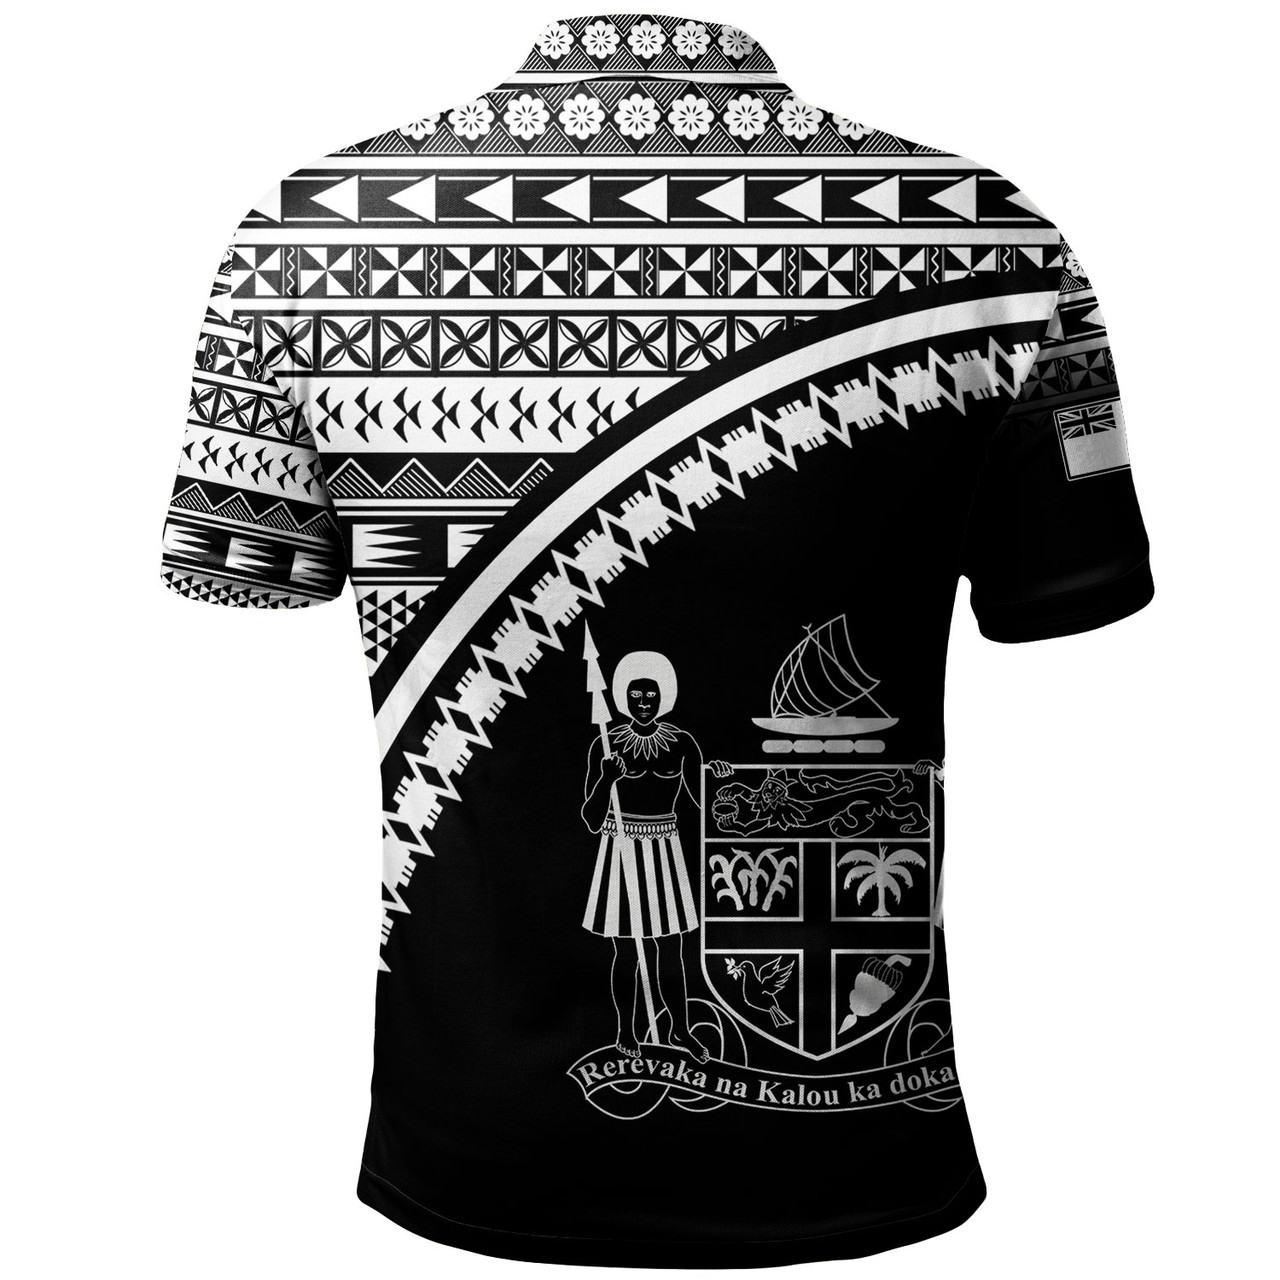 Fiji Custom Personalised Polo Shirt Fijian Kesakesa Masi Patterns Curve Style